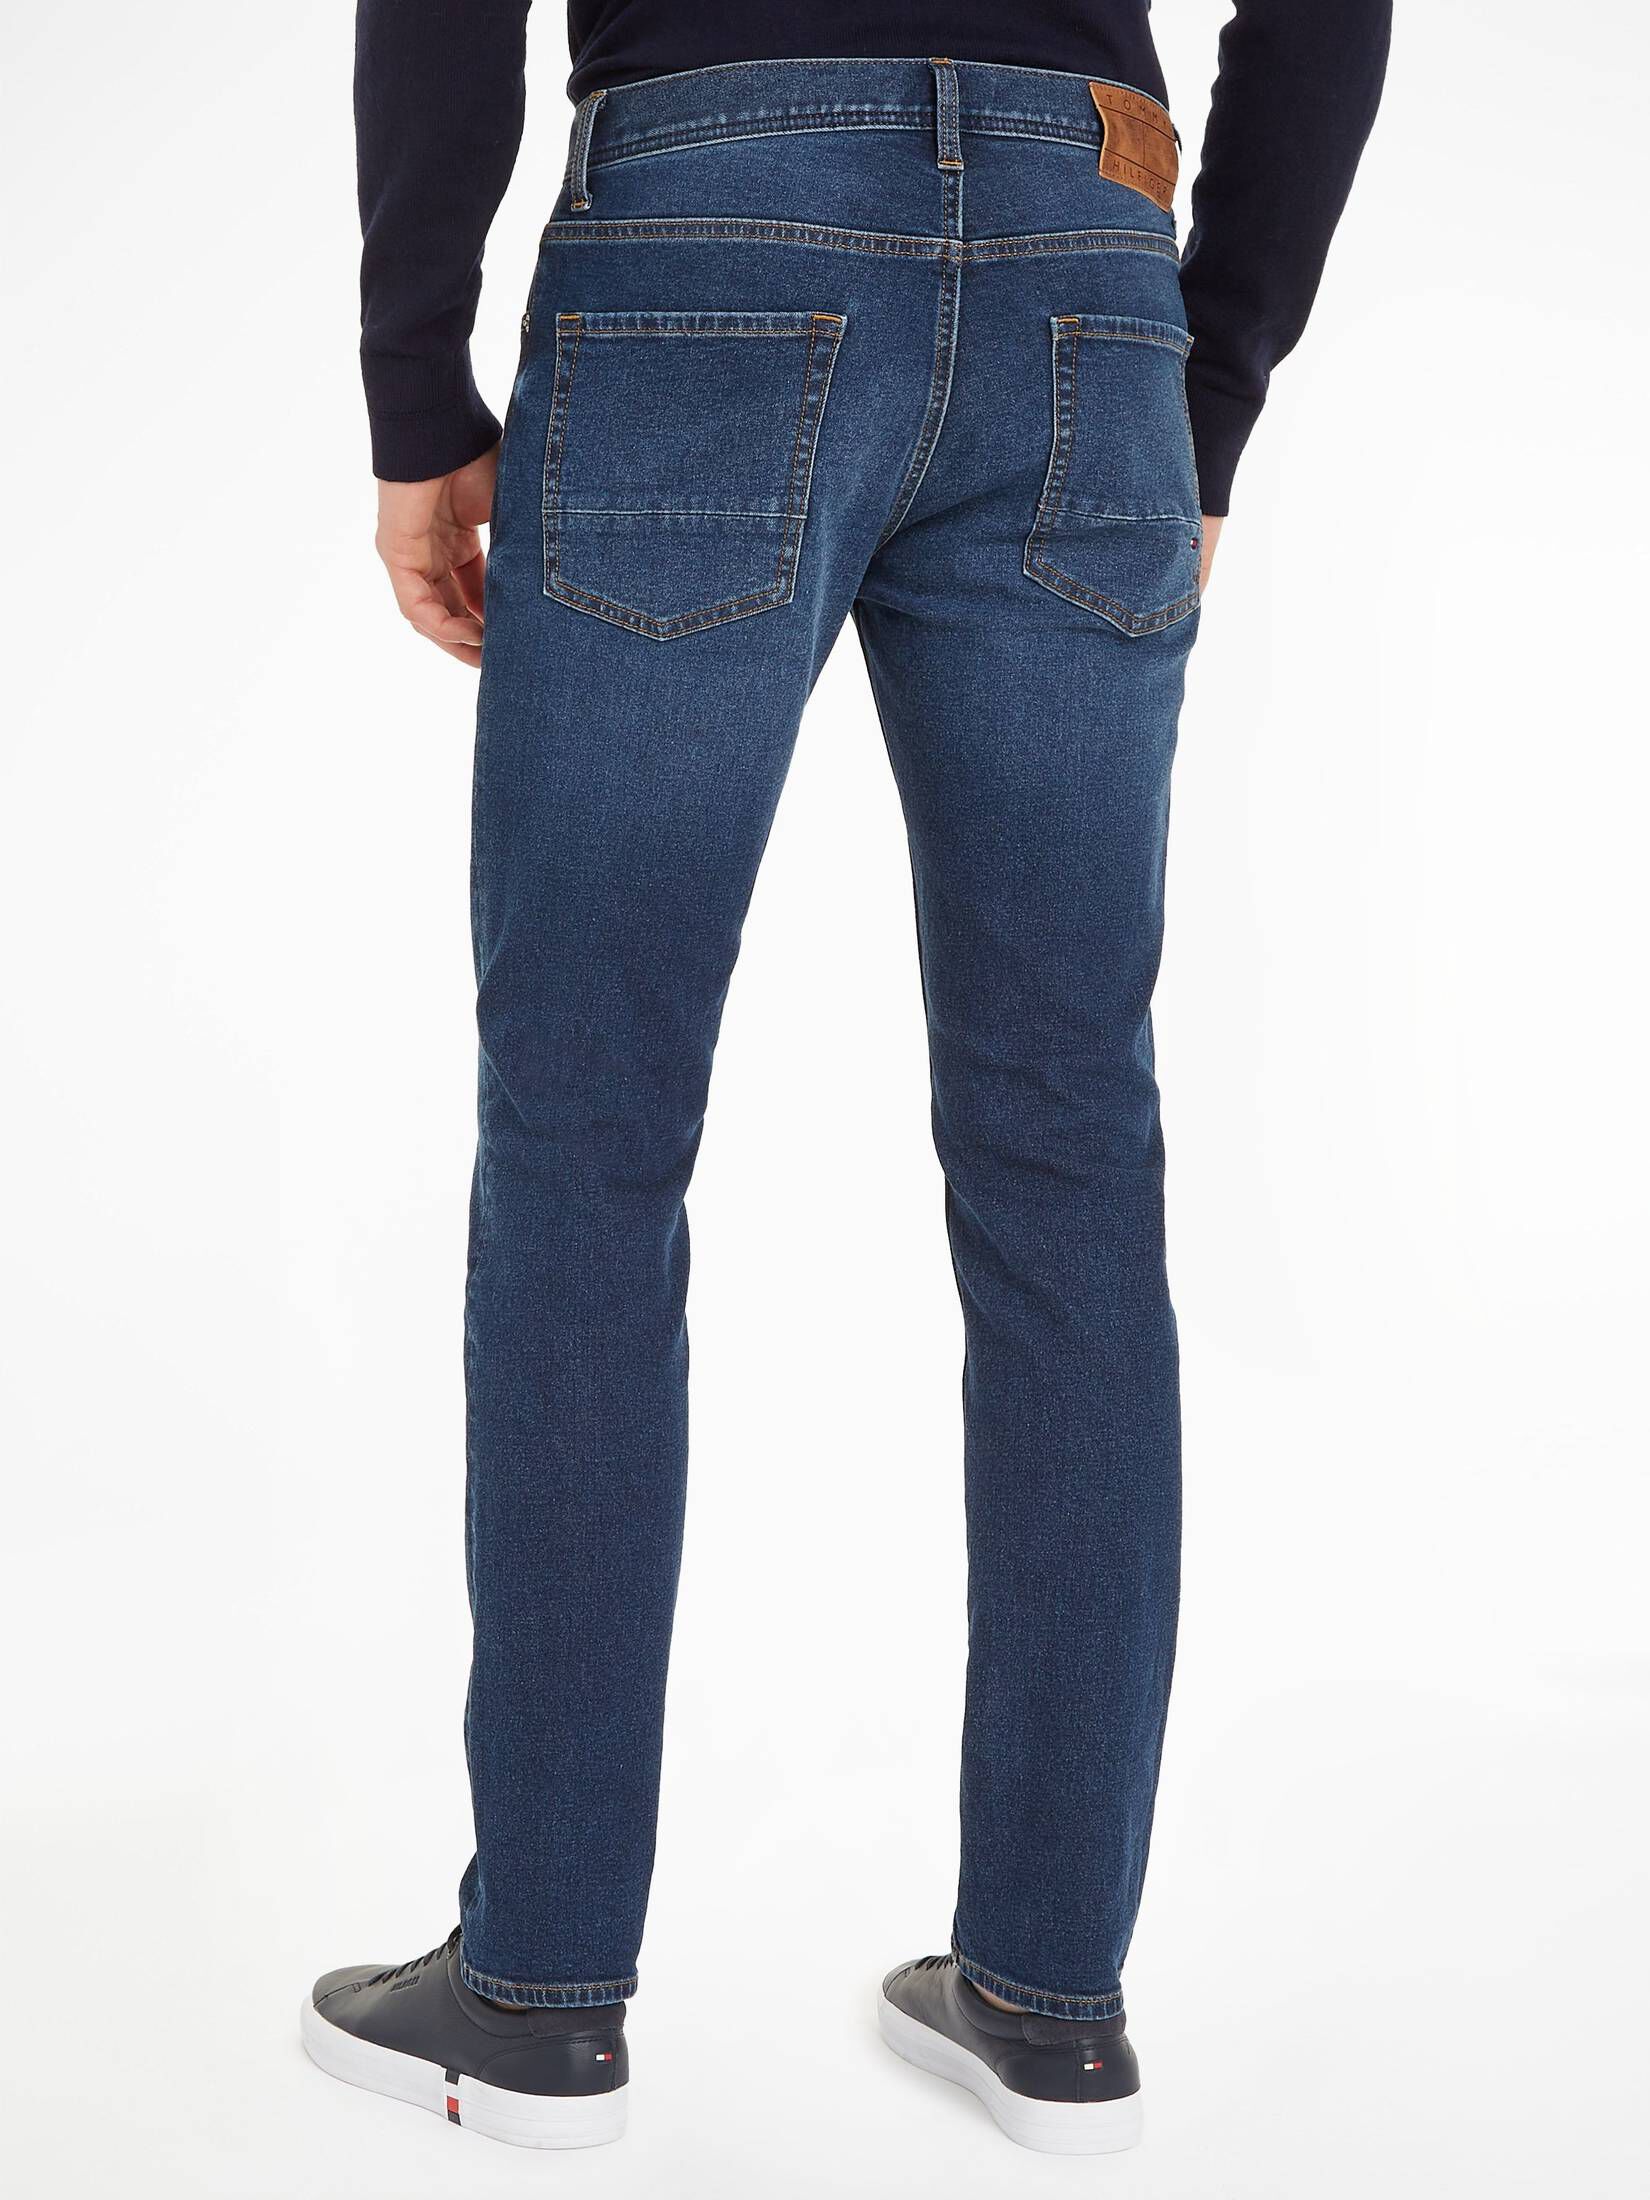 Tommy Hilfiger Jeans STERNE Straight DENTON engelhorn kaufen | STR Fit TH Herren